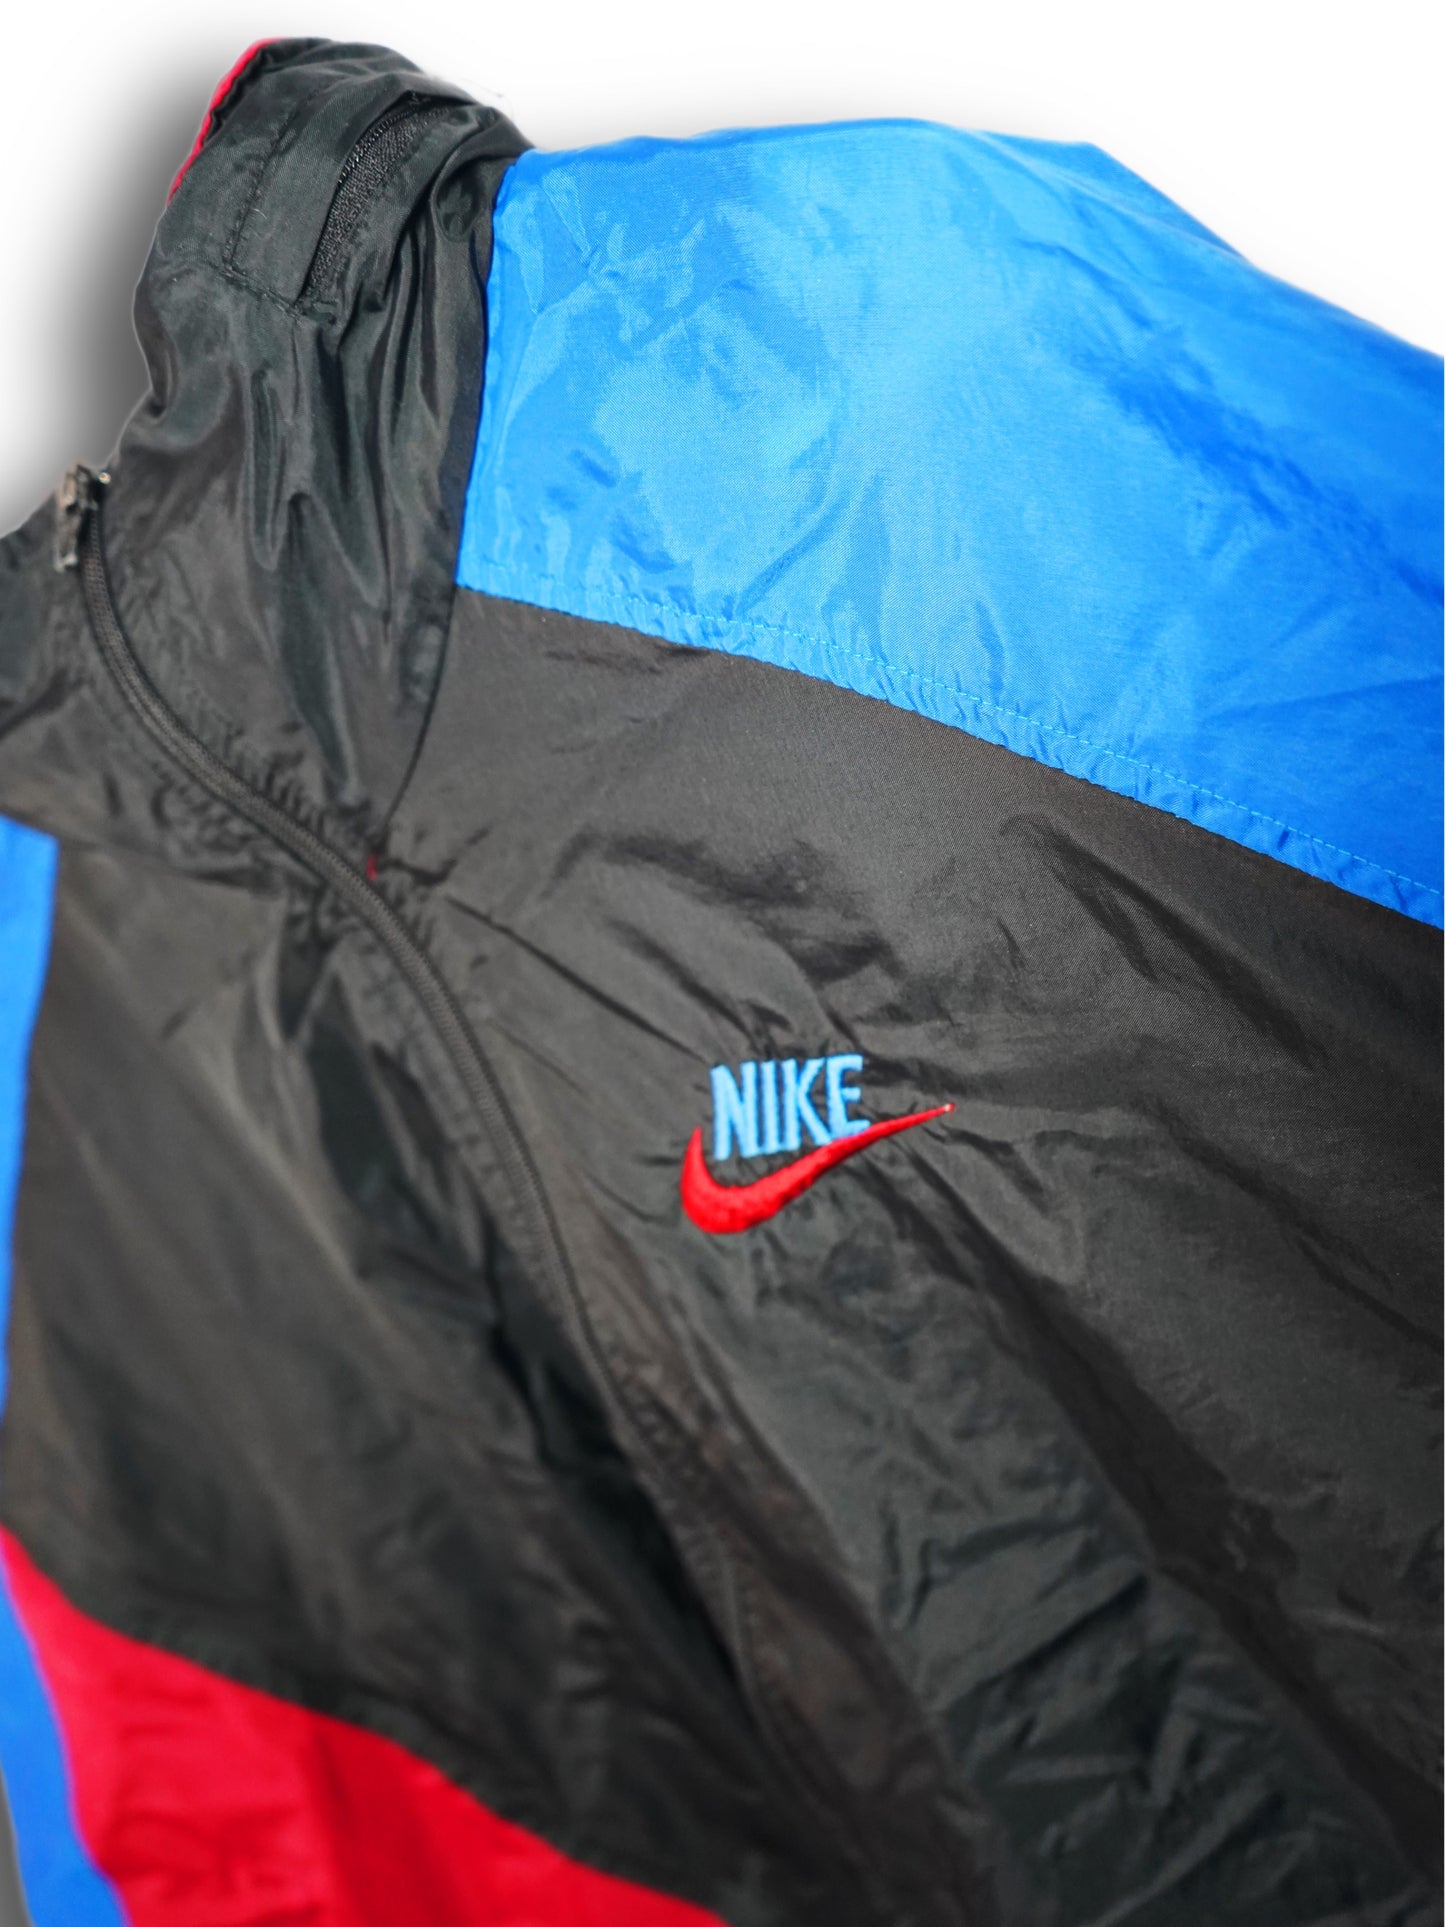 Nike Track Jacke Schwarz, Blau, Rot